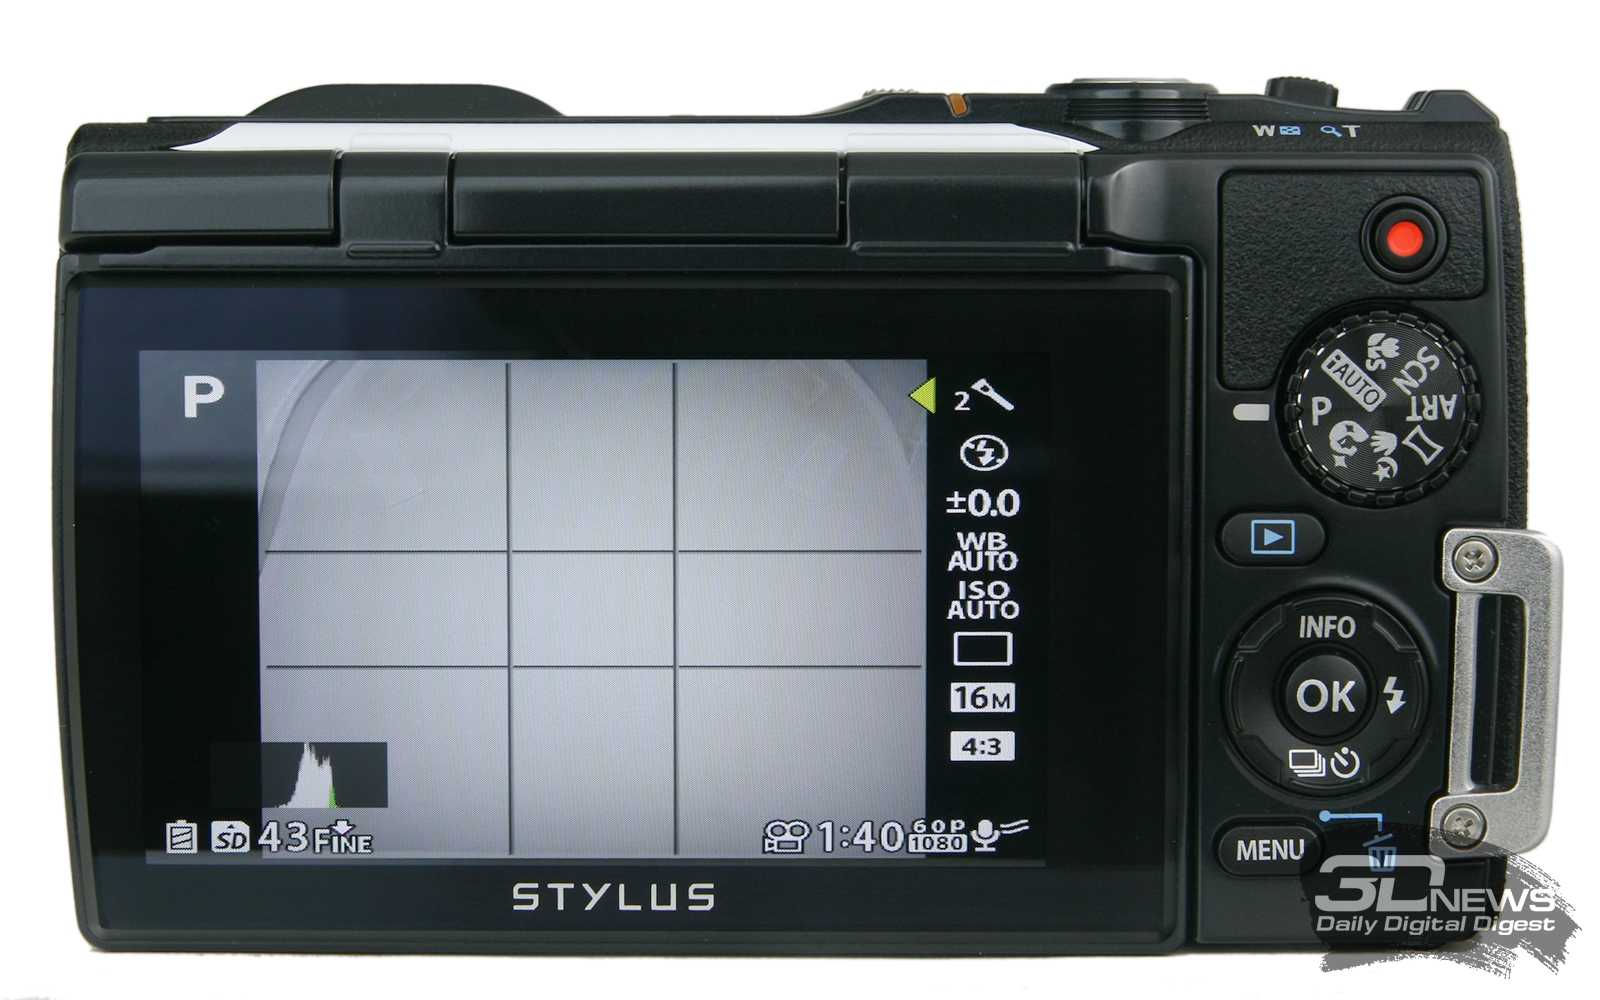 Olympus tough tg-850 ihs (белый) - купить , скидки, цена, отзывы, обзор, характеристики - фотоаппараты цифровые